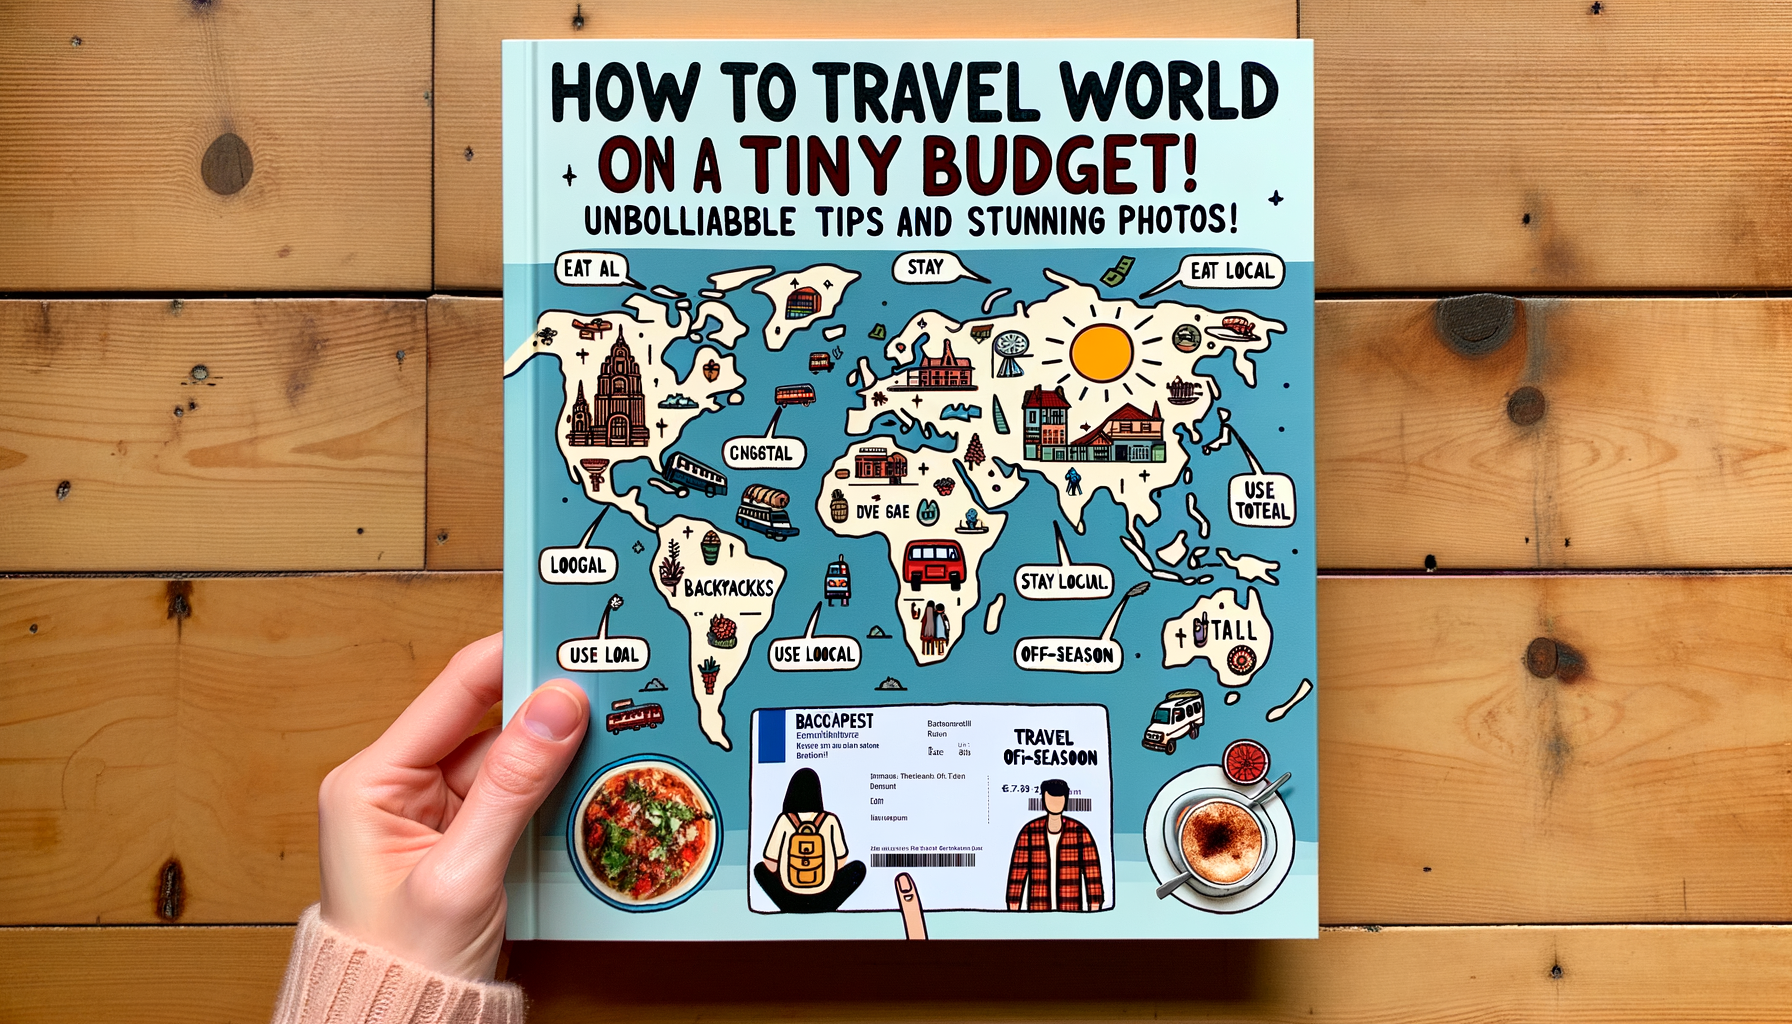 découvrez comment explorer le monde avec un budget limité et profitez de conseils pratiques pour un voyage économique et mémorable.